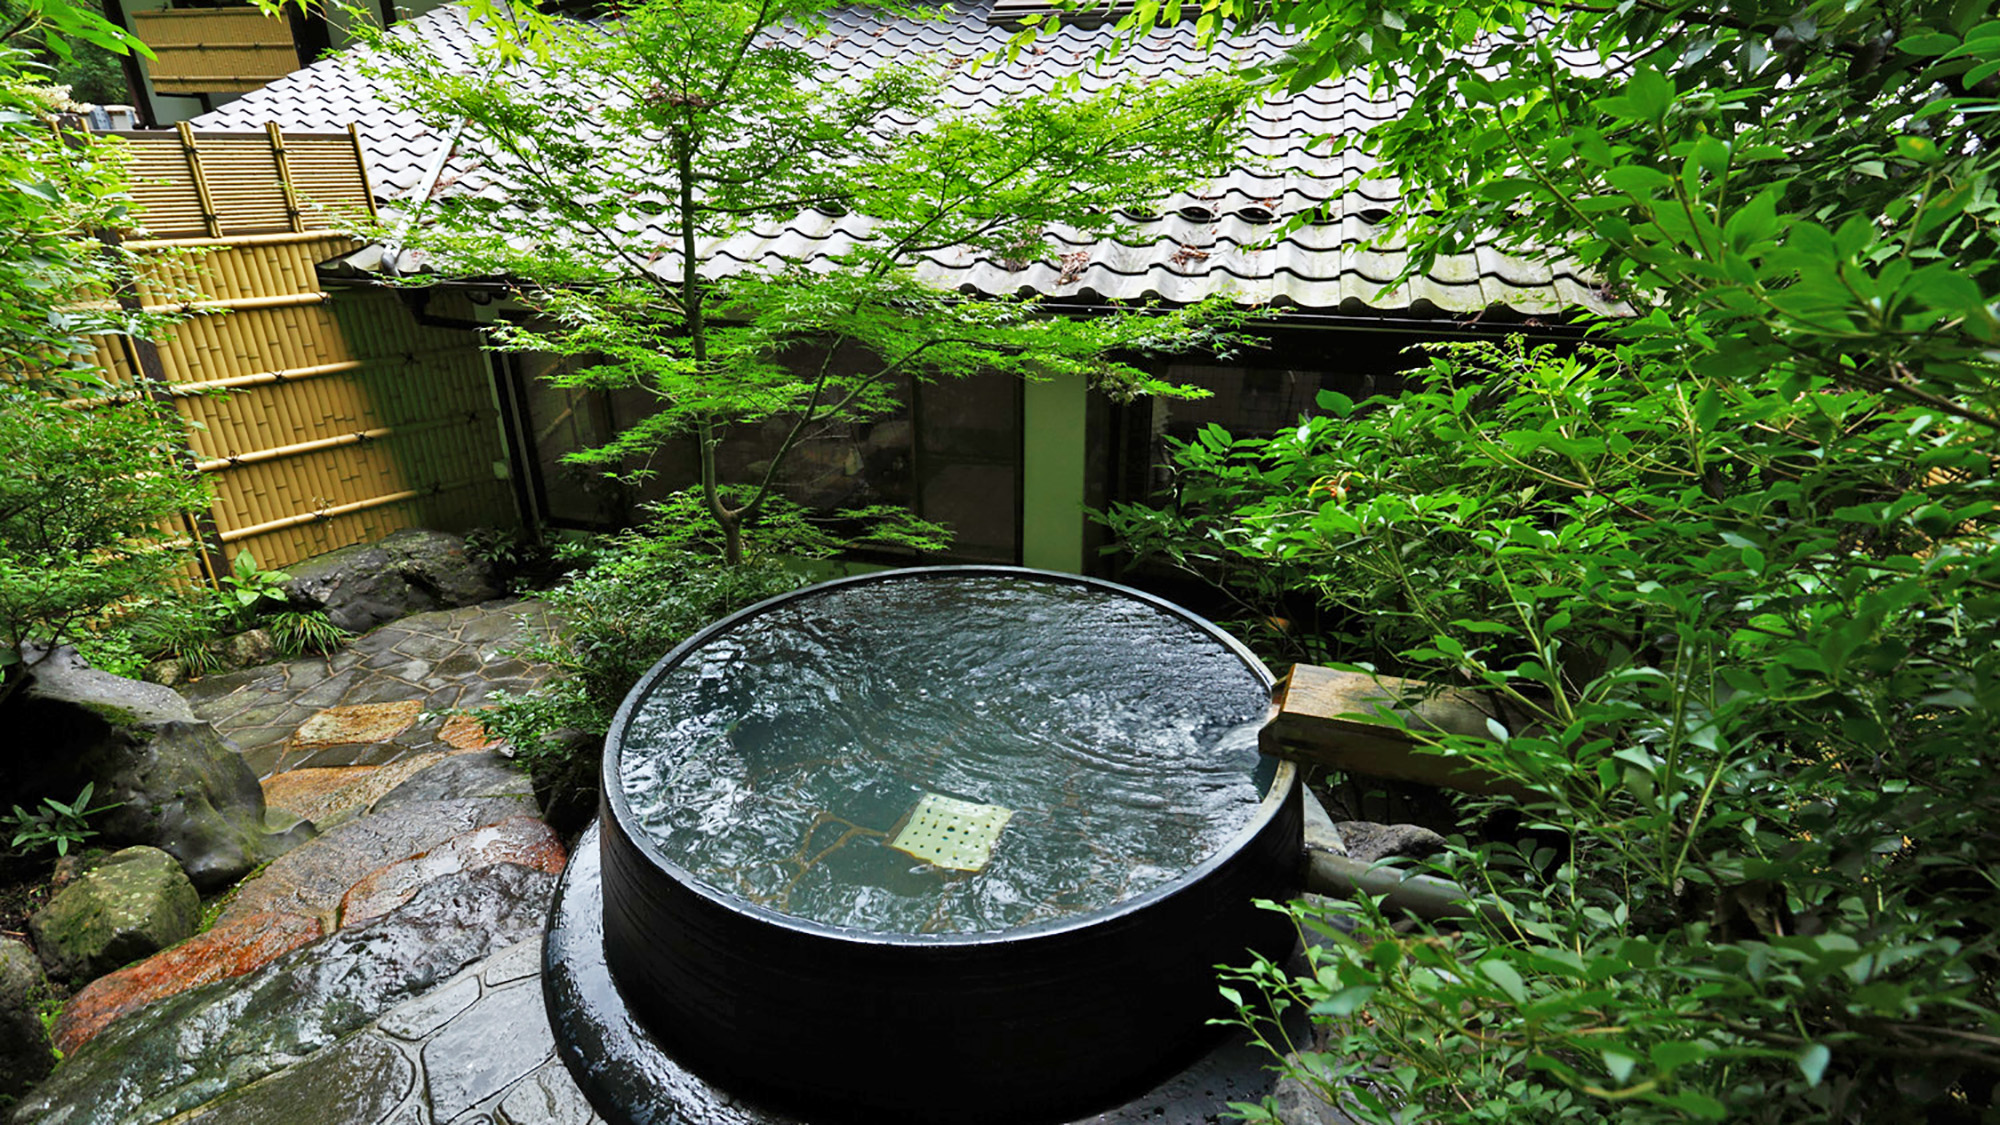 *【露天風呂】緑が美しい新緑の五右衛門露天風呂。森林浴気分でゆったりと癒されるひととき…。